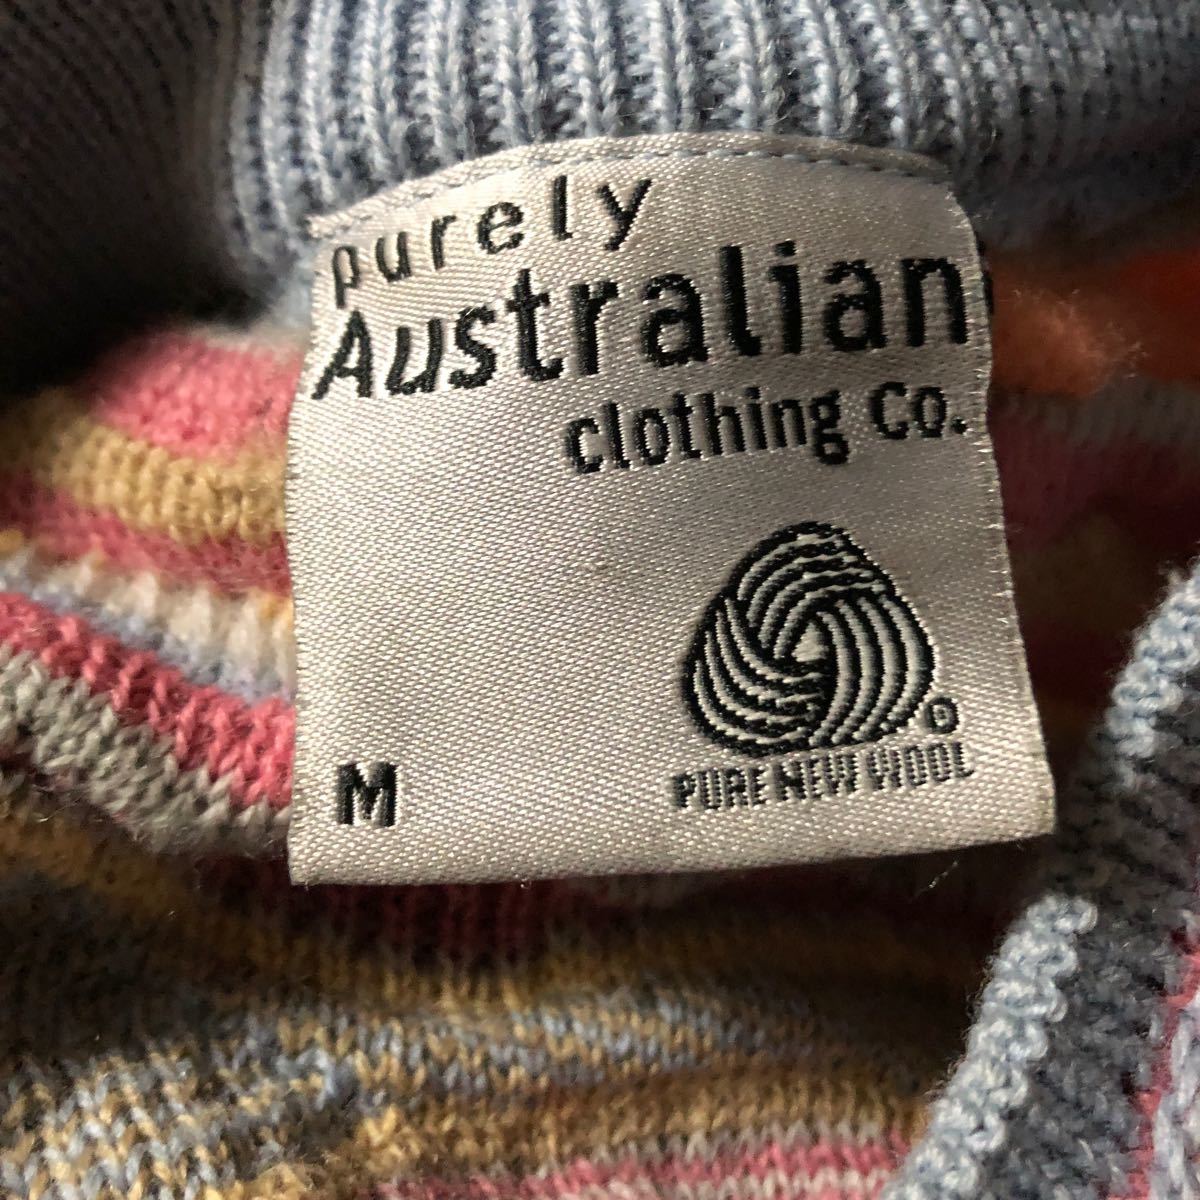 オーストラリア製purely Australia clothing 3DニットセーターM_画像7